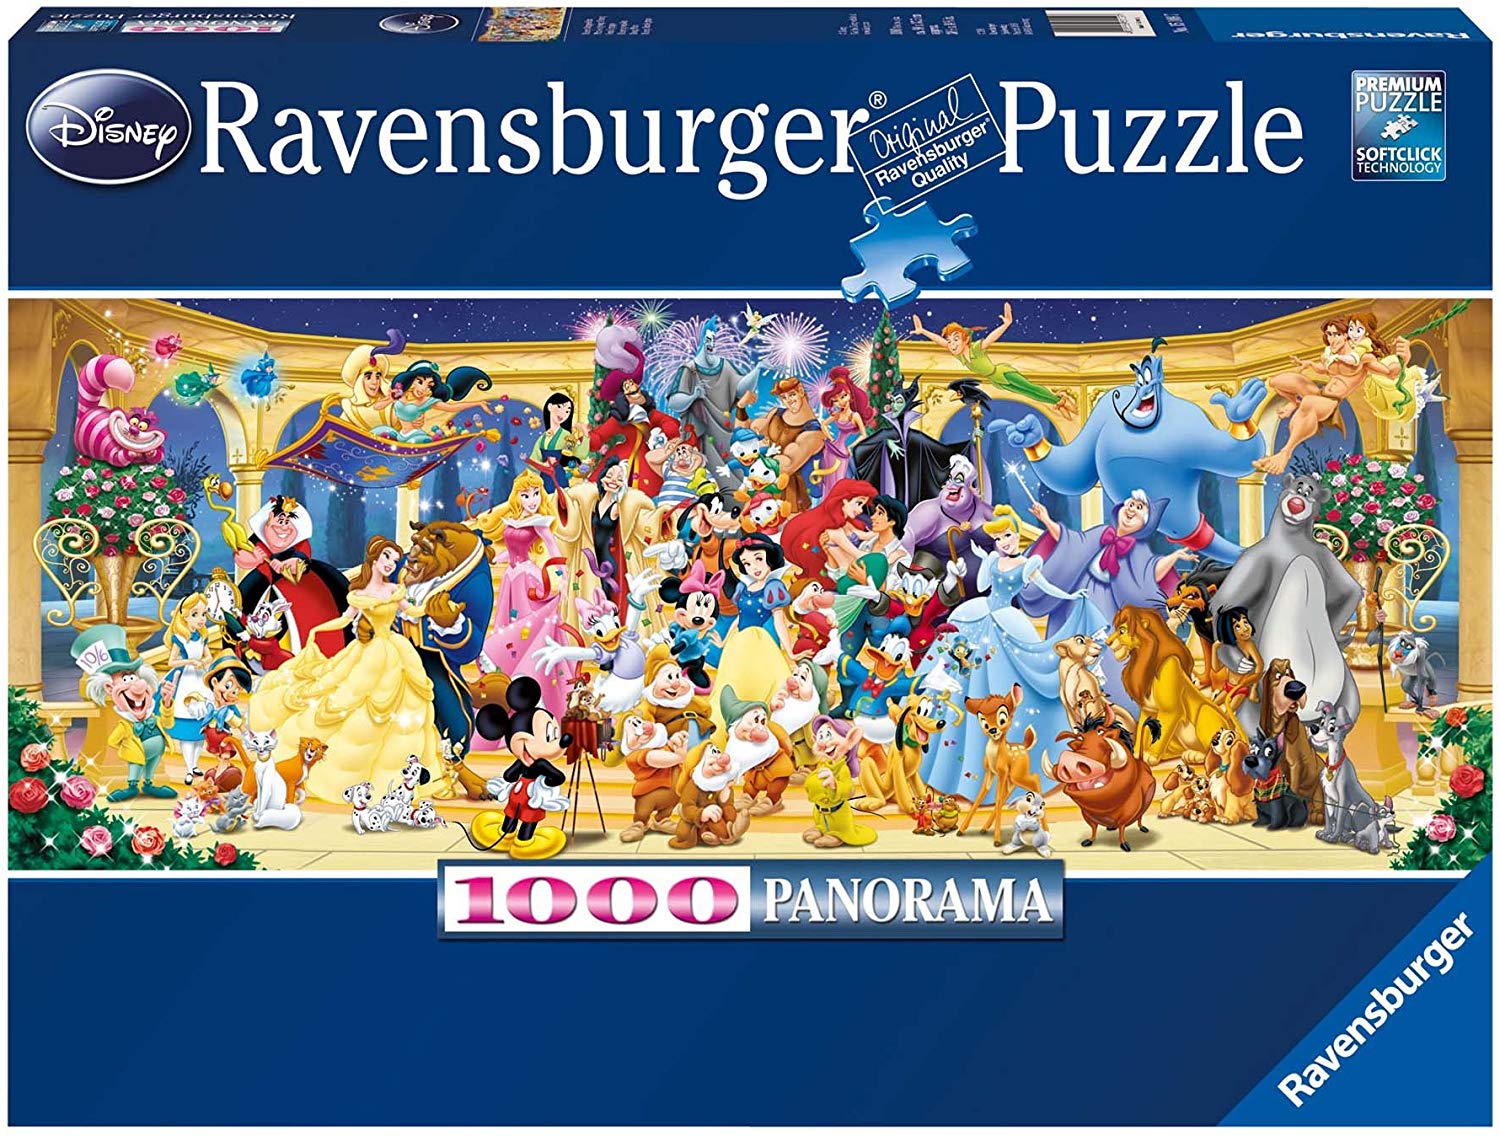 Ravensburger Disney Panoramic Jigsaw Puzzle 1000 Piece Top Toys